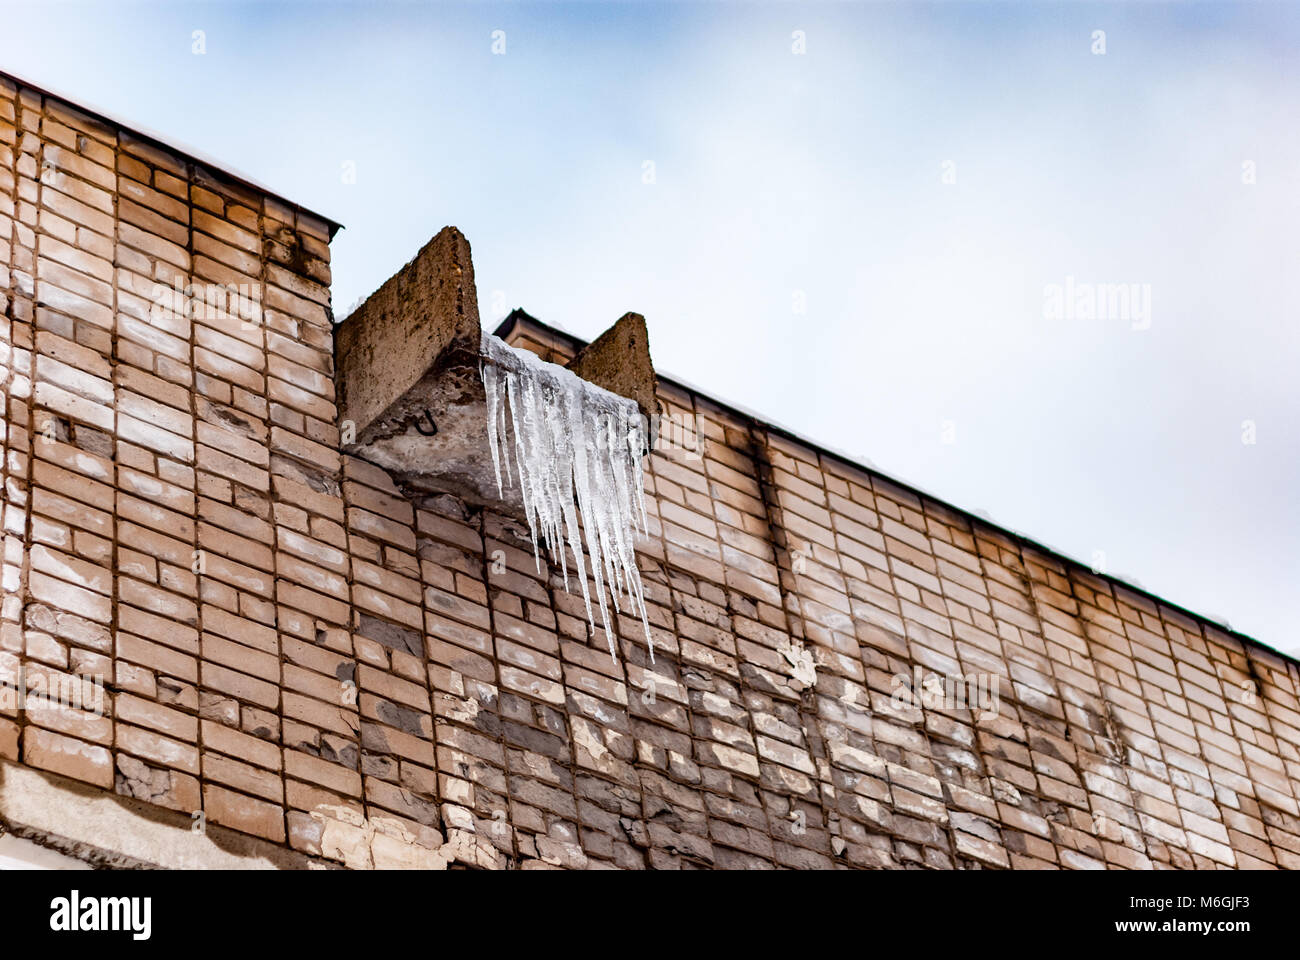 Les glaçons gelés pendent d'une auge en béton sur un vieux mur de briques, vestiges du froid de l'hiver Banque D'Images